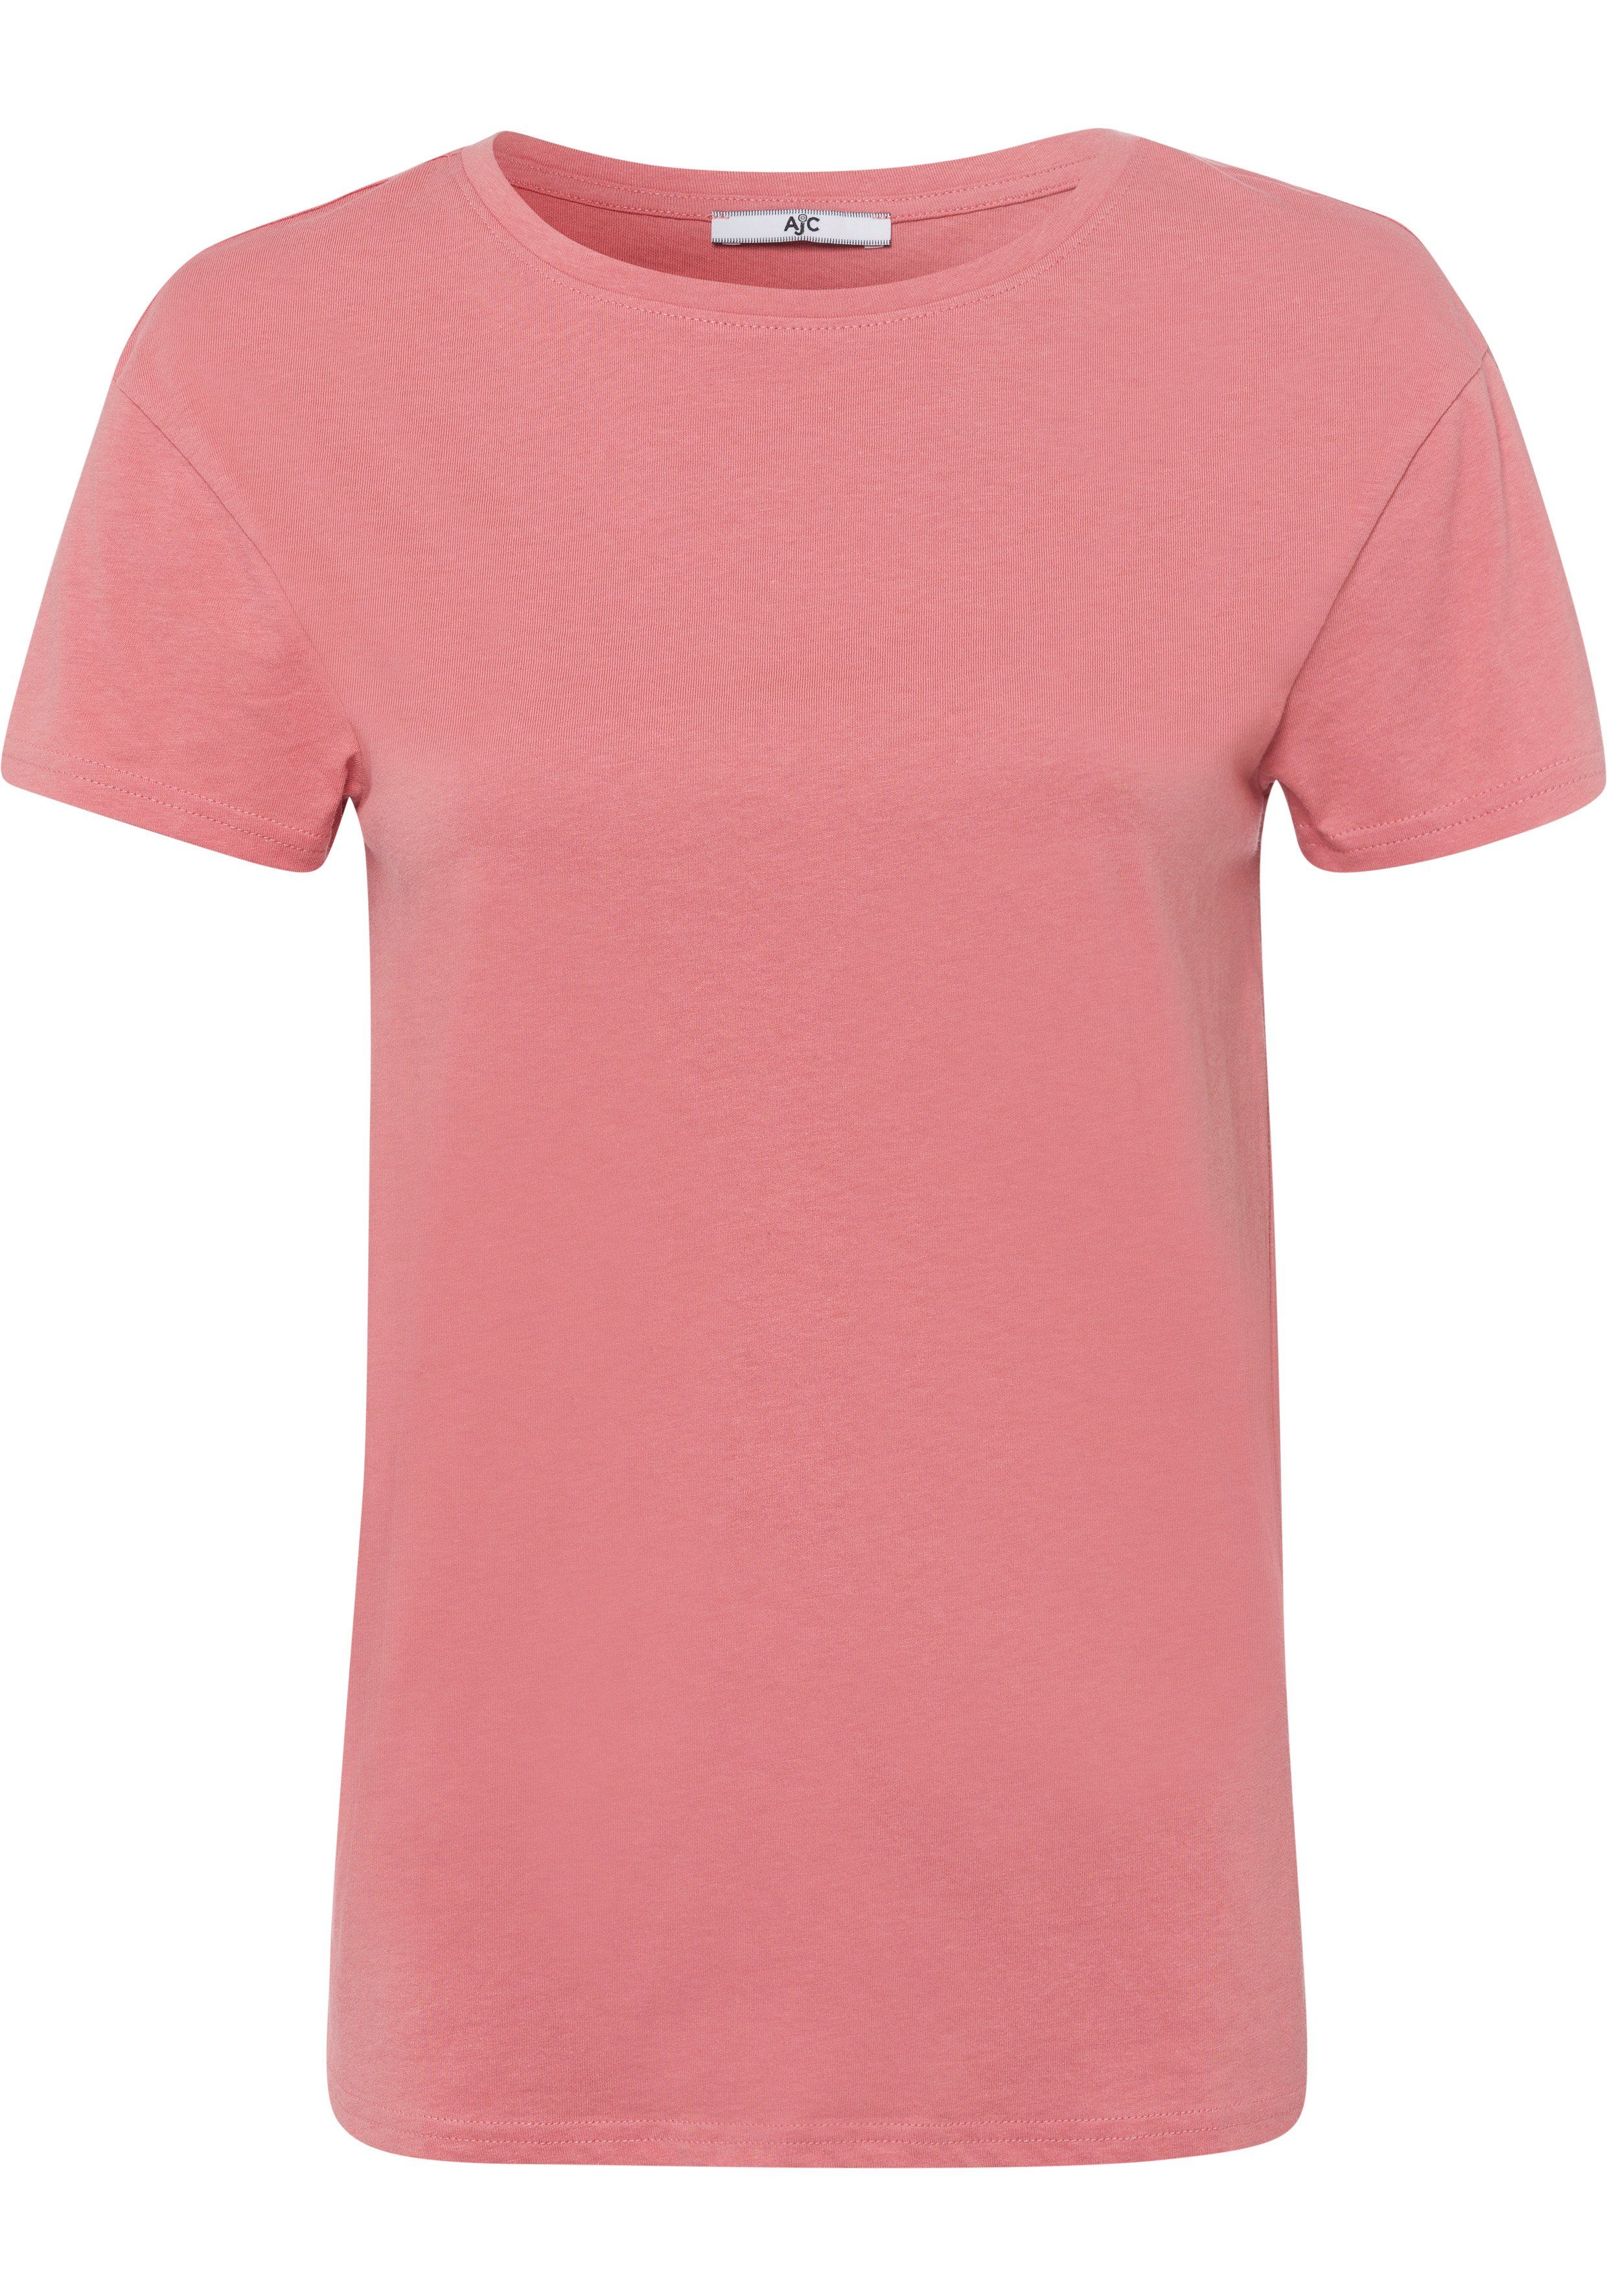 AJC T-Shirt im Oversized-Look KOLLEKTION lachs NEUE - trendigen